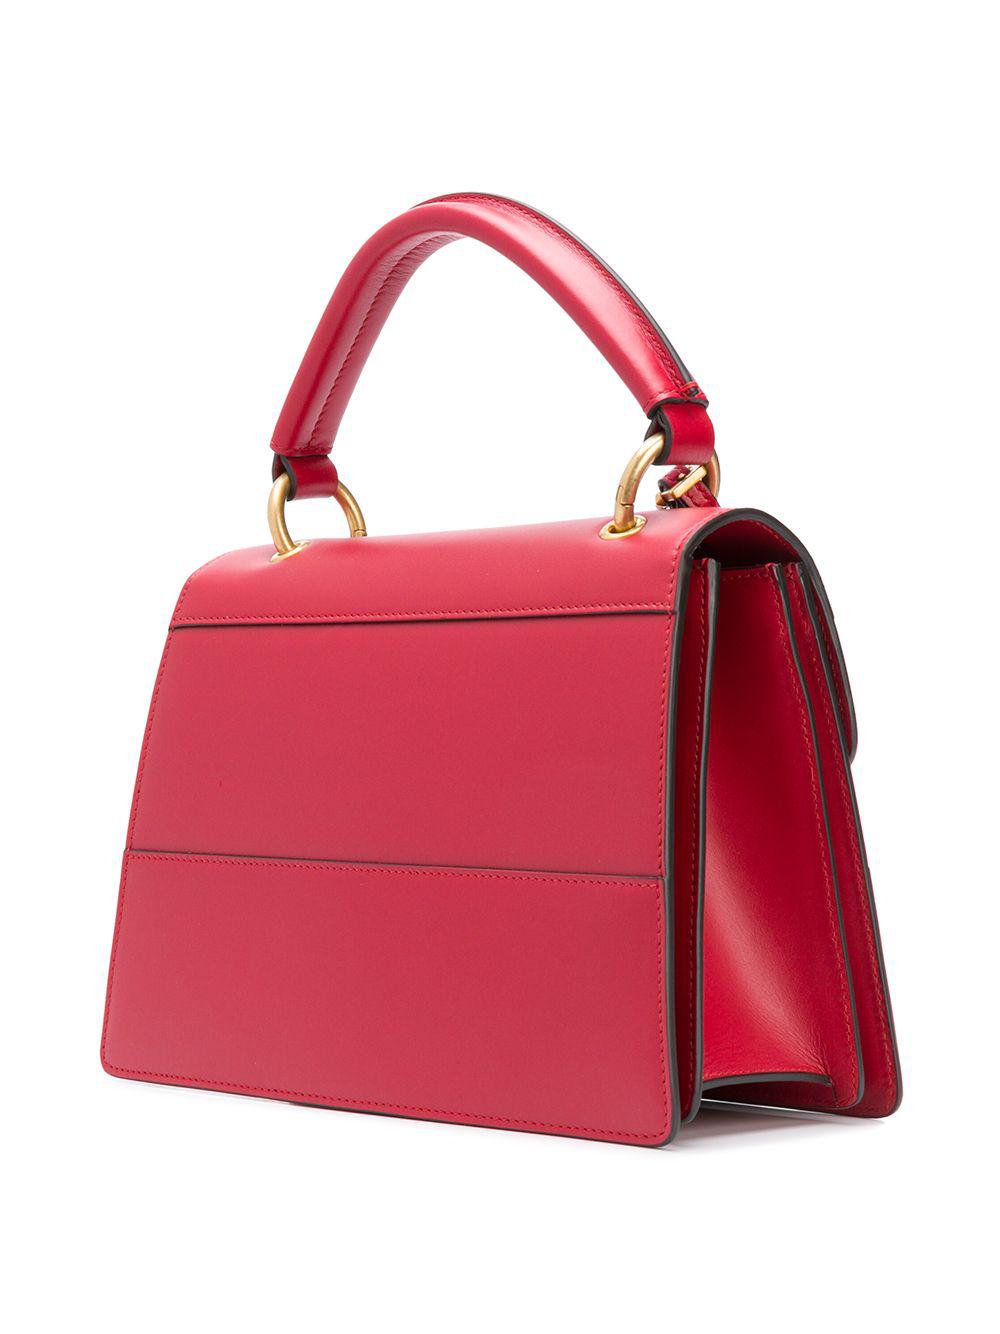 Lyst - Gucci Bee Embellished Shoulder Bag in Red